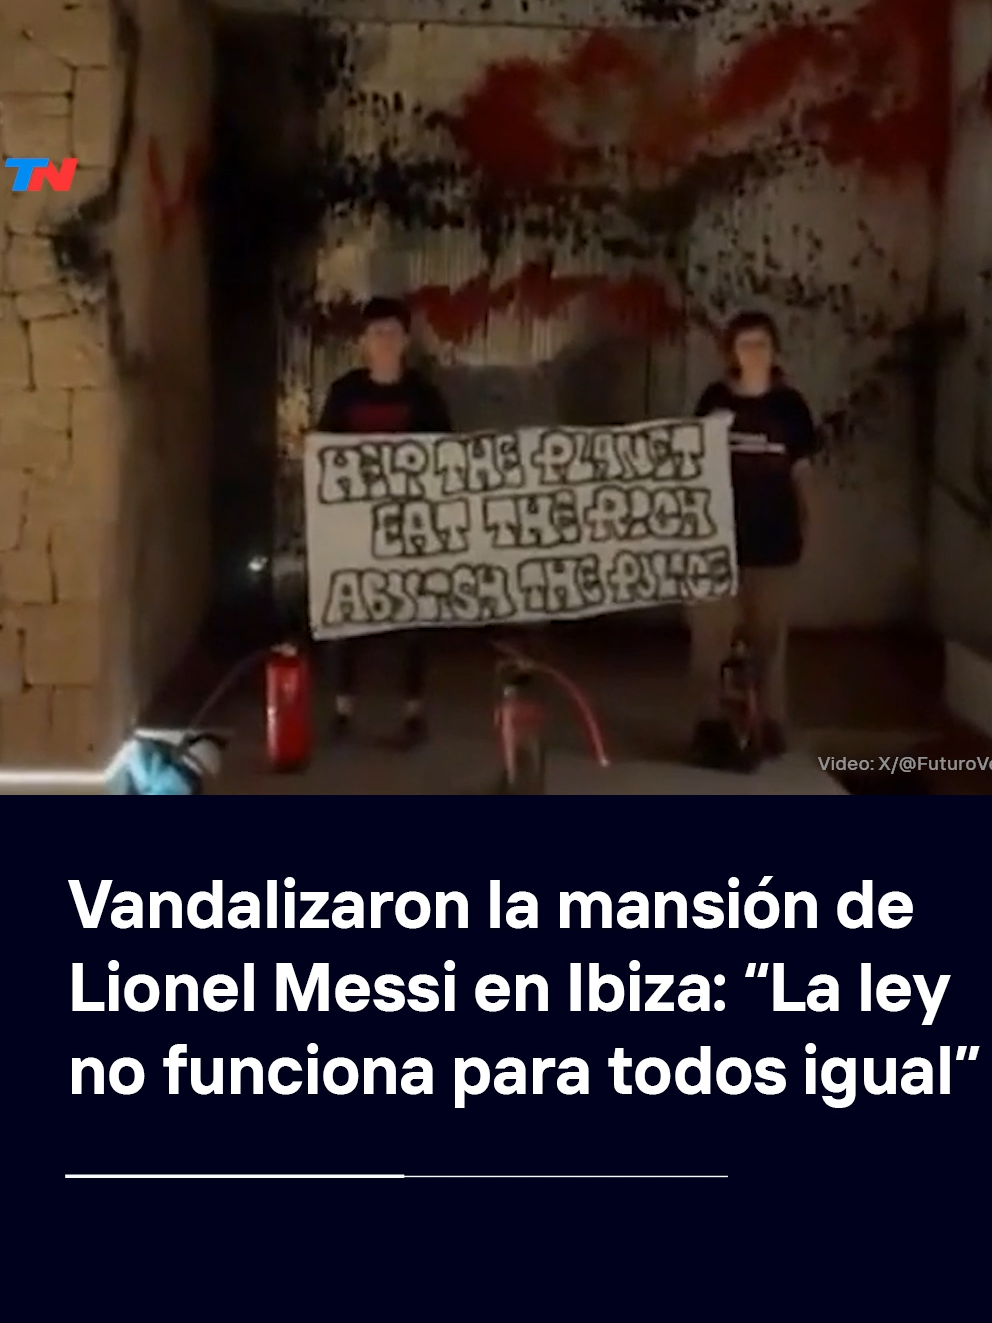 Activistas medioambientales vandalizaron con pintura roja y negra la fachada de la mansión de Leo Messi en la isla española de Ibiza para denunciar la “responsabilidad de los ricos” en la crisis climática.